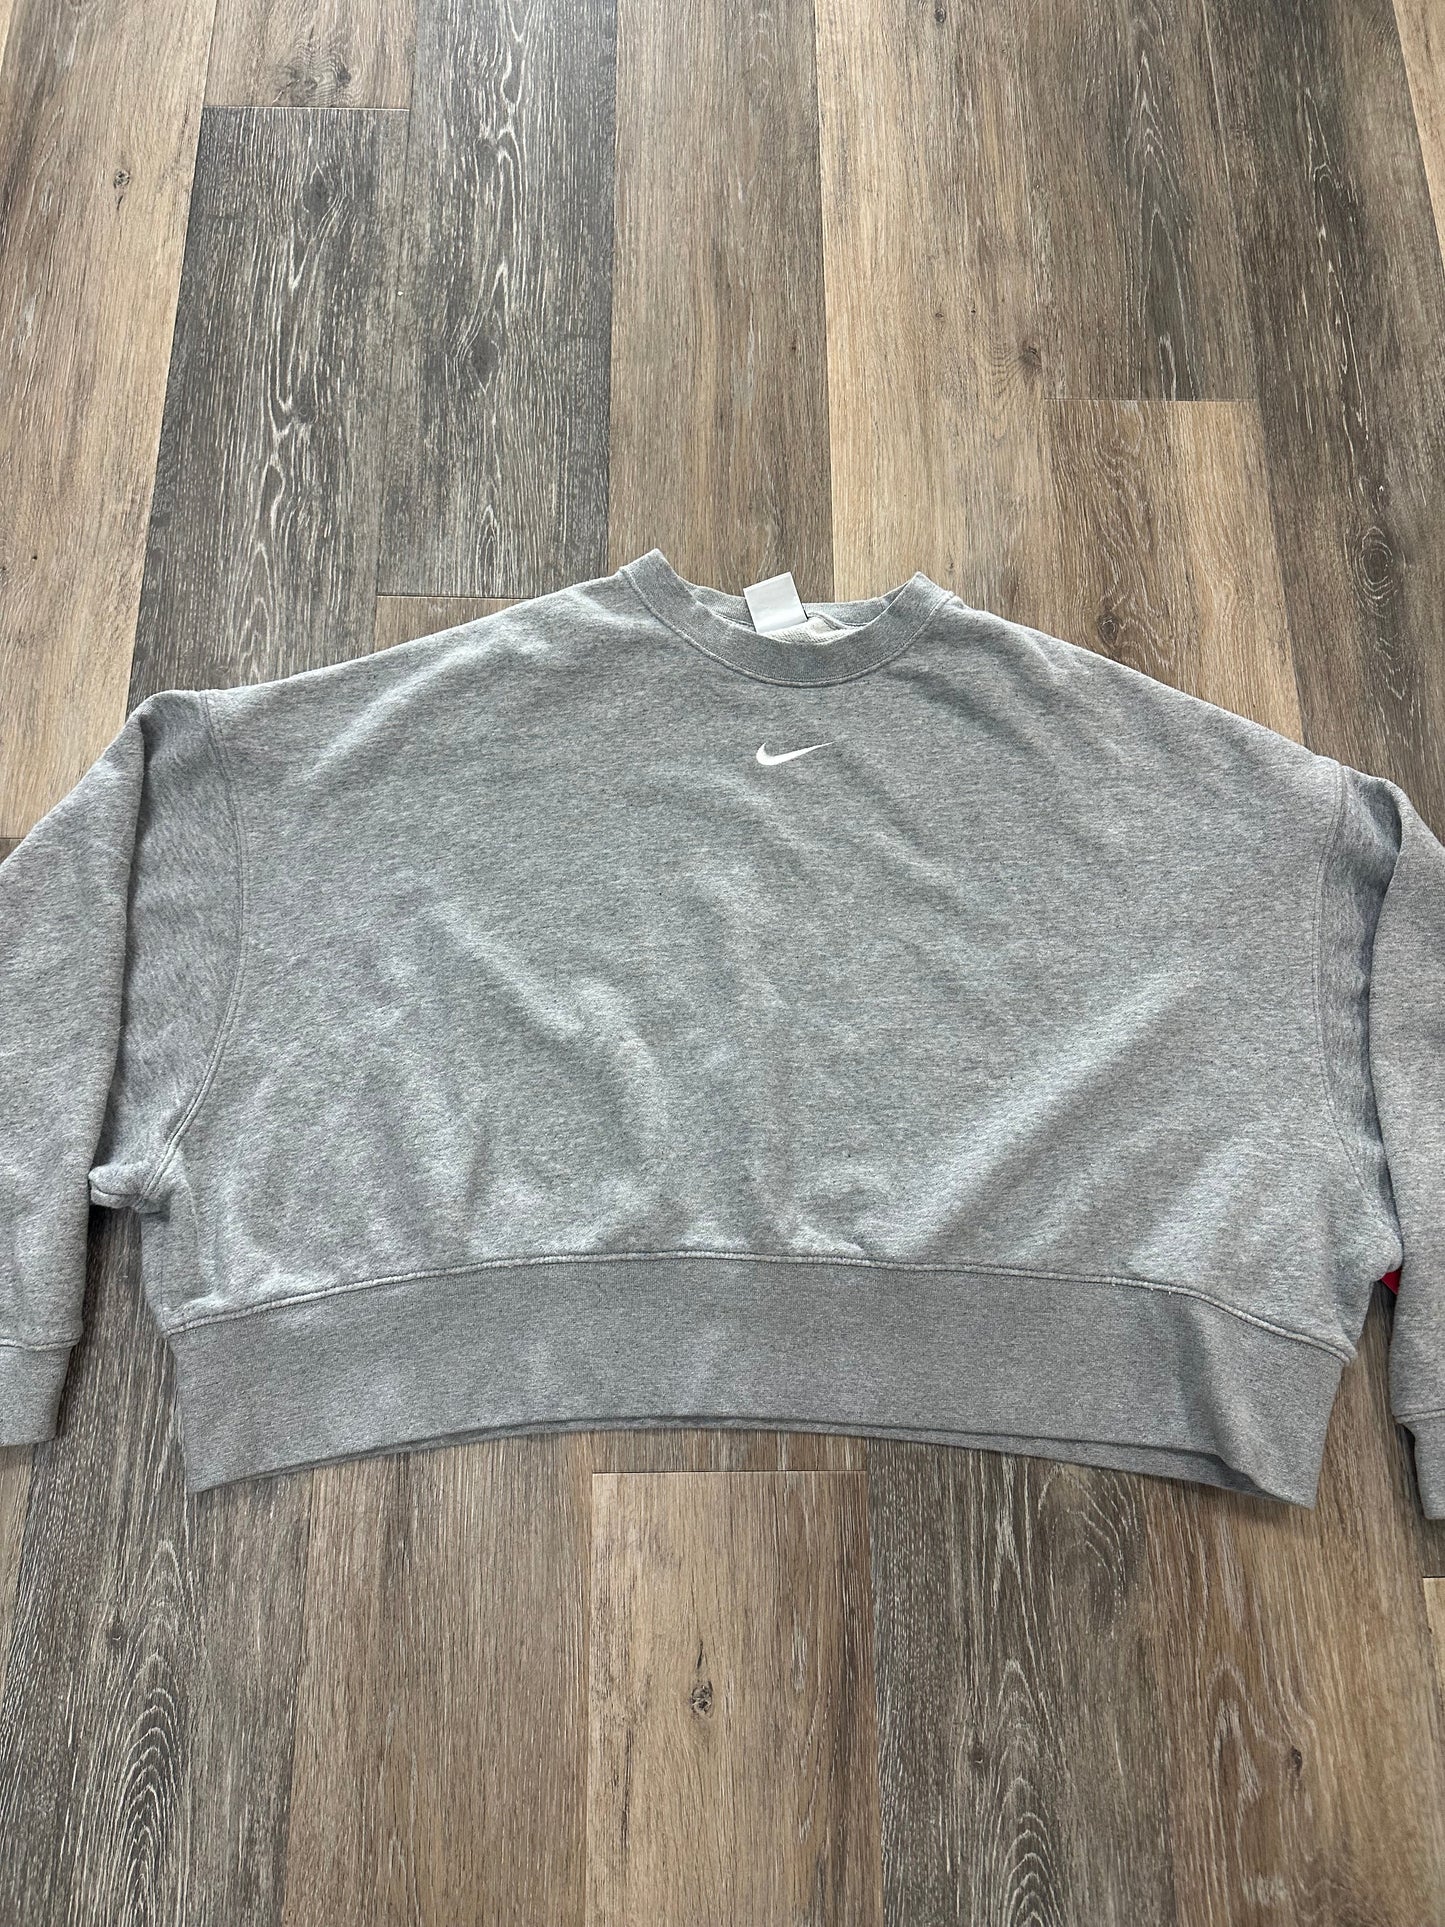 Grey Athletic Sweatshirt Crewneck Nike Apparel, Size L